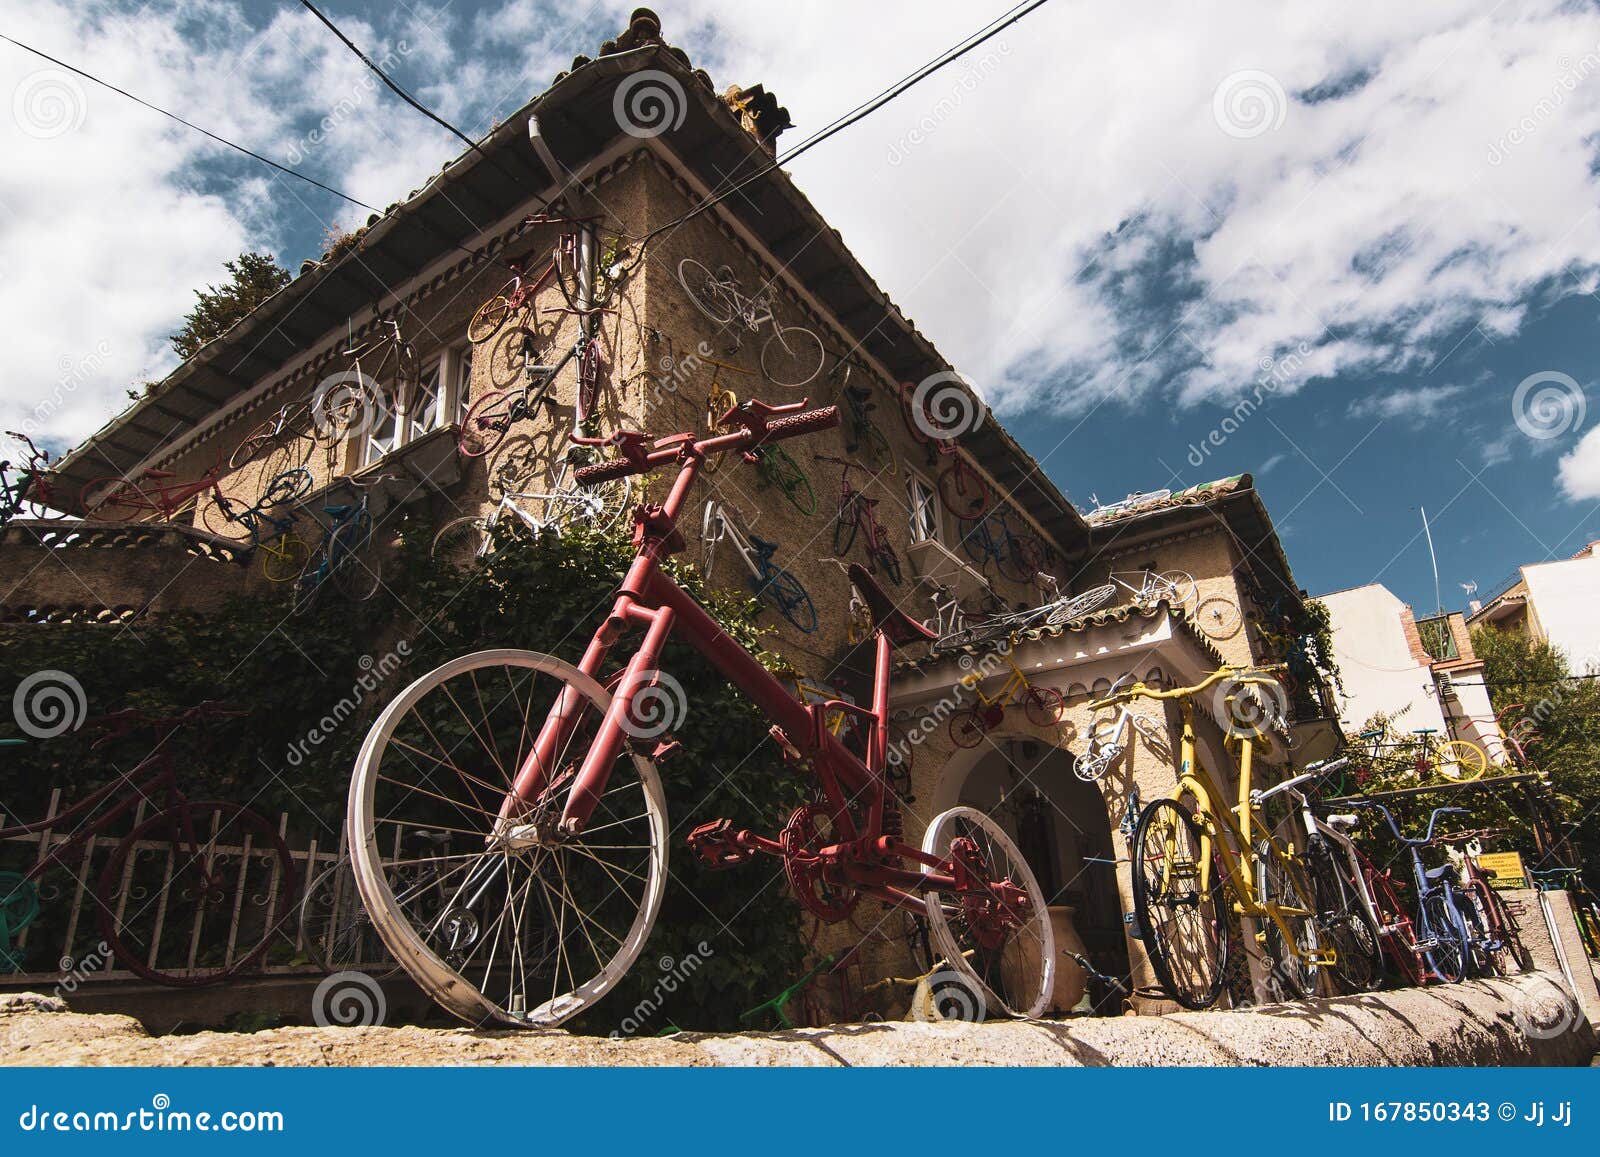 the house of bikes in cazorla. la casa de las bicicletas